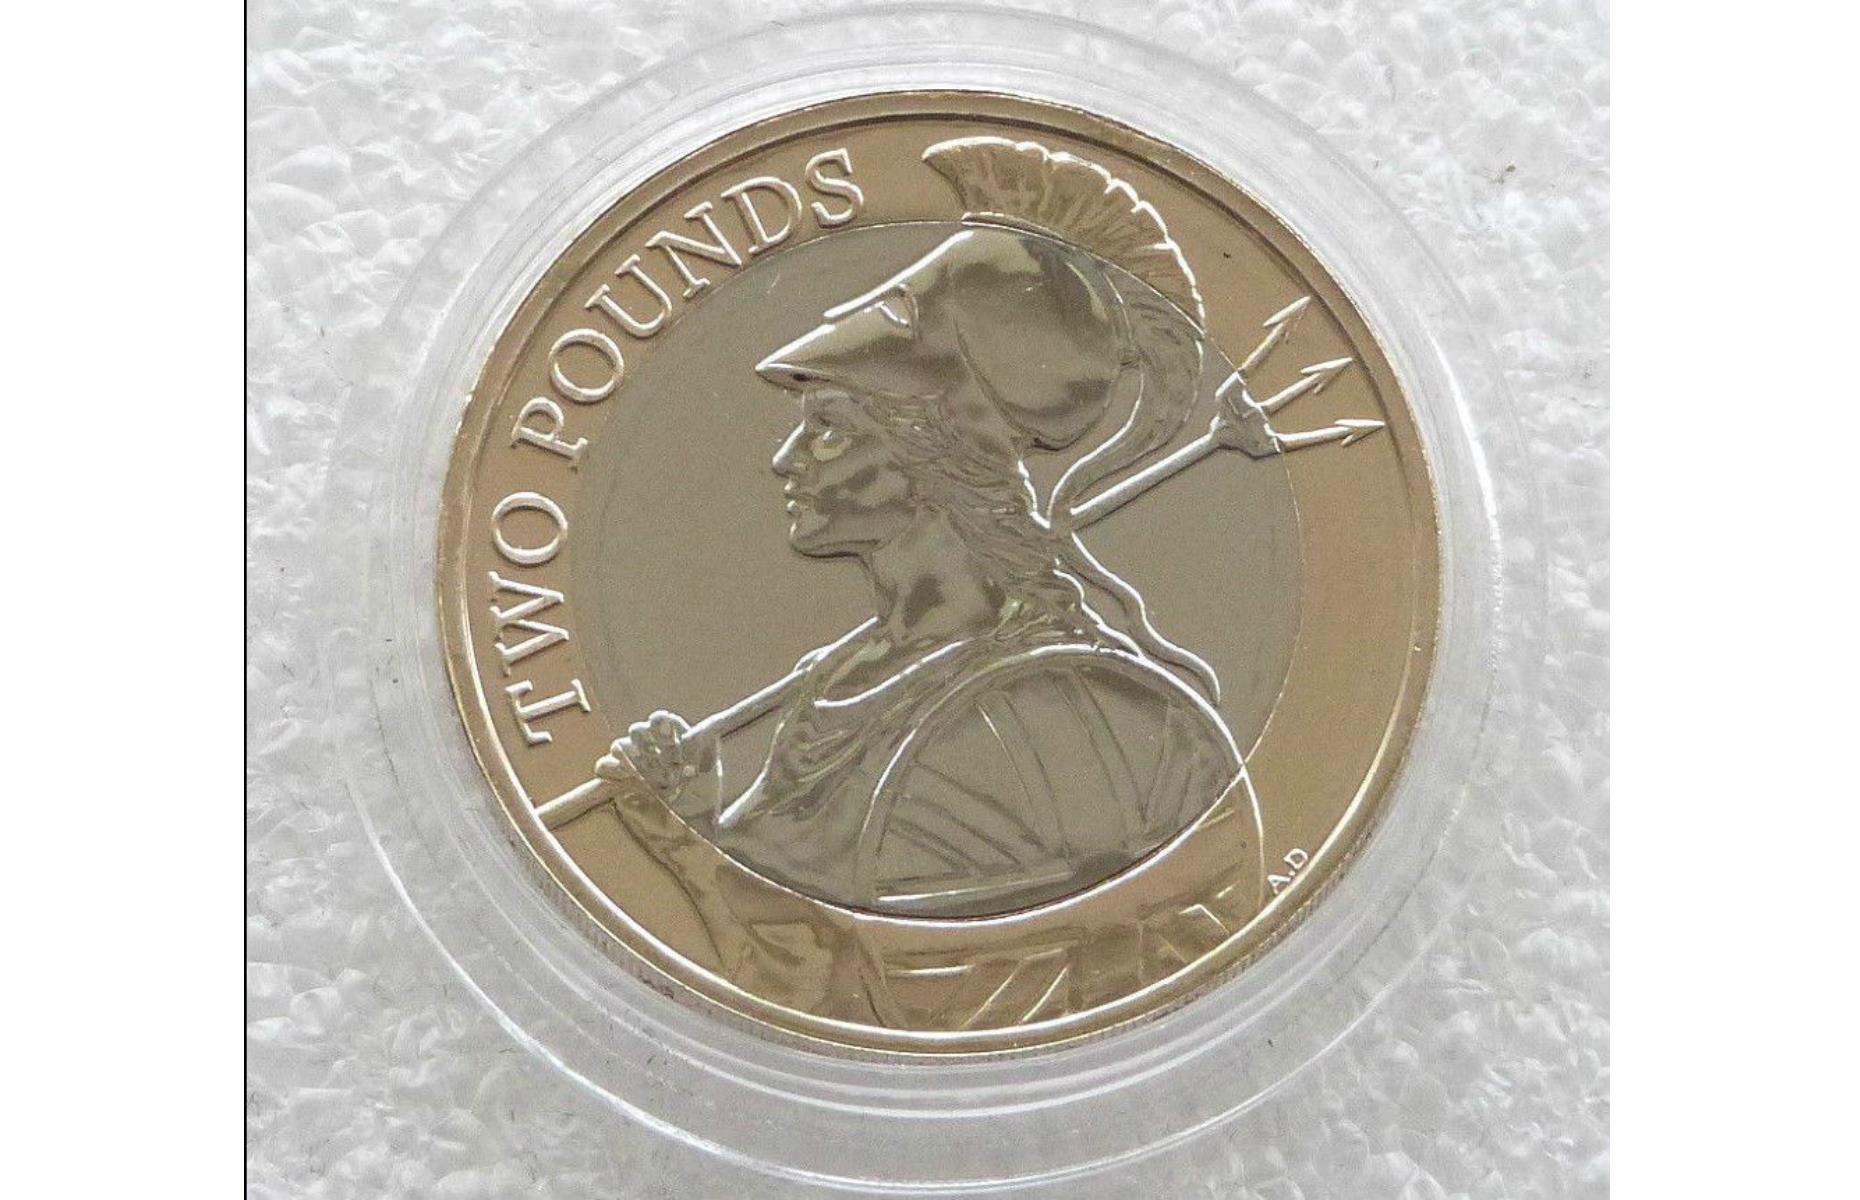 2015 Britannia £2 coin